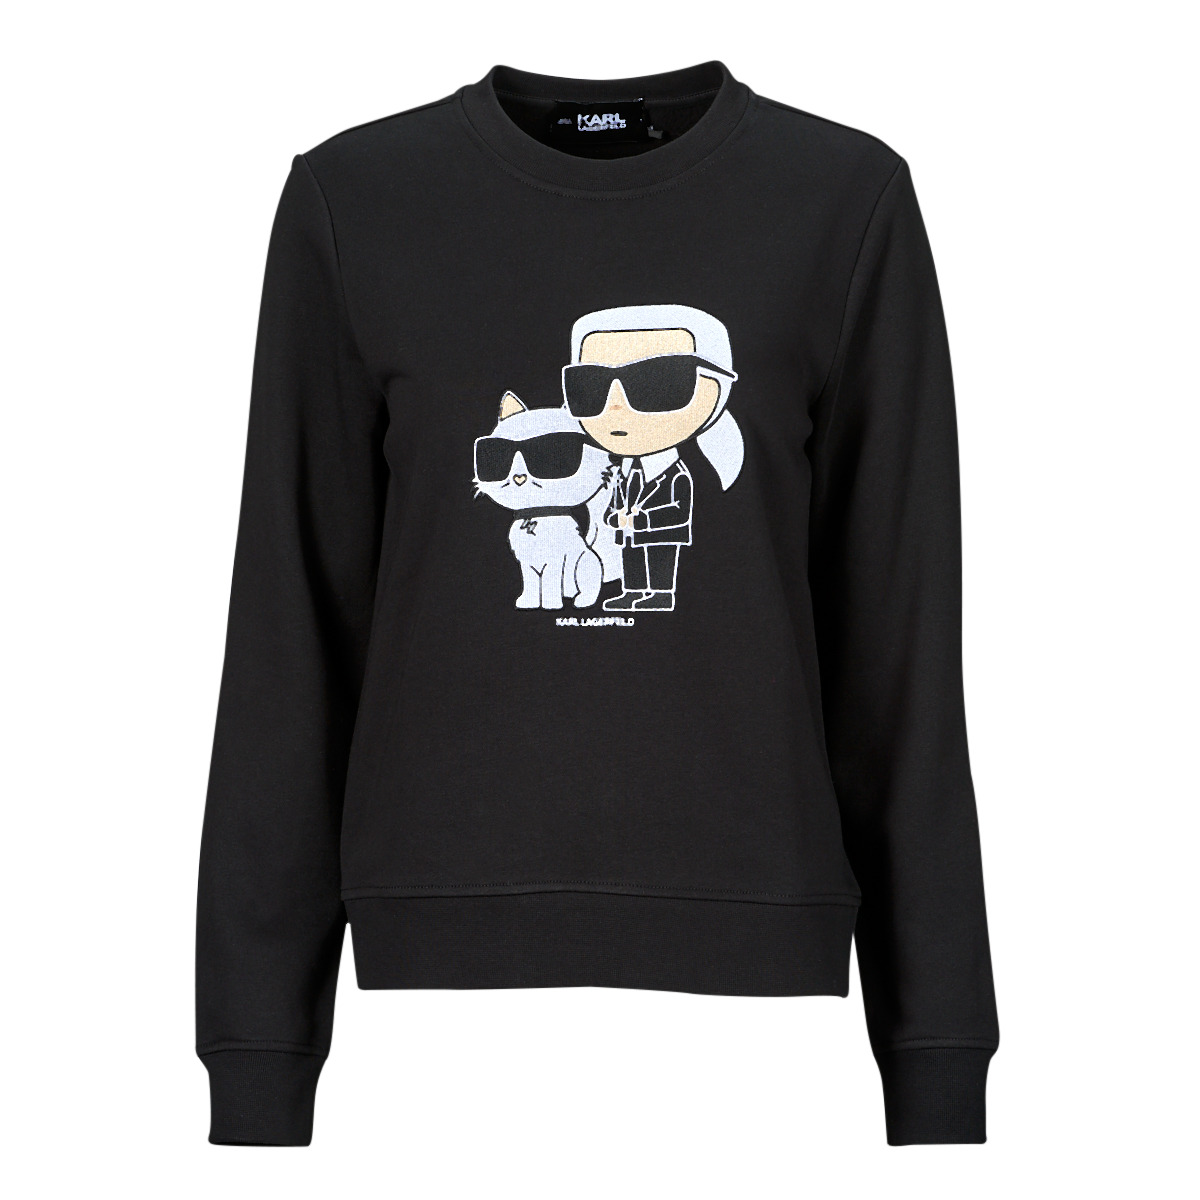 Φούτερ Karl Lagerfeld ikonik 2.0 sweatshirt